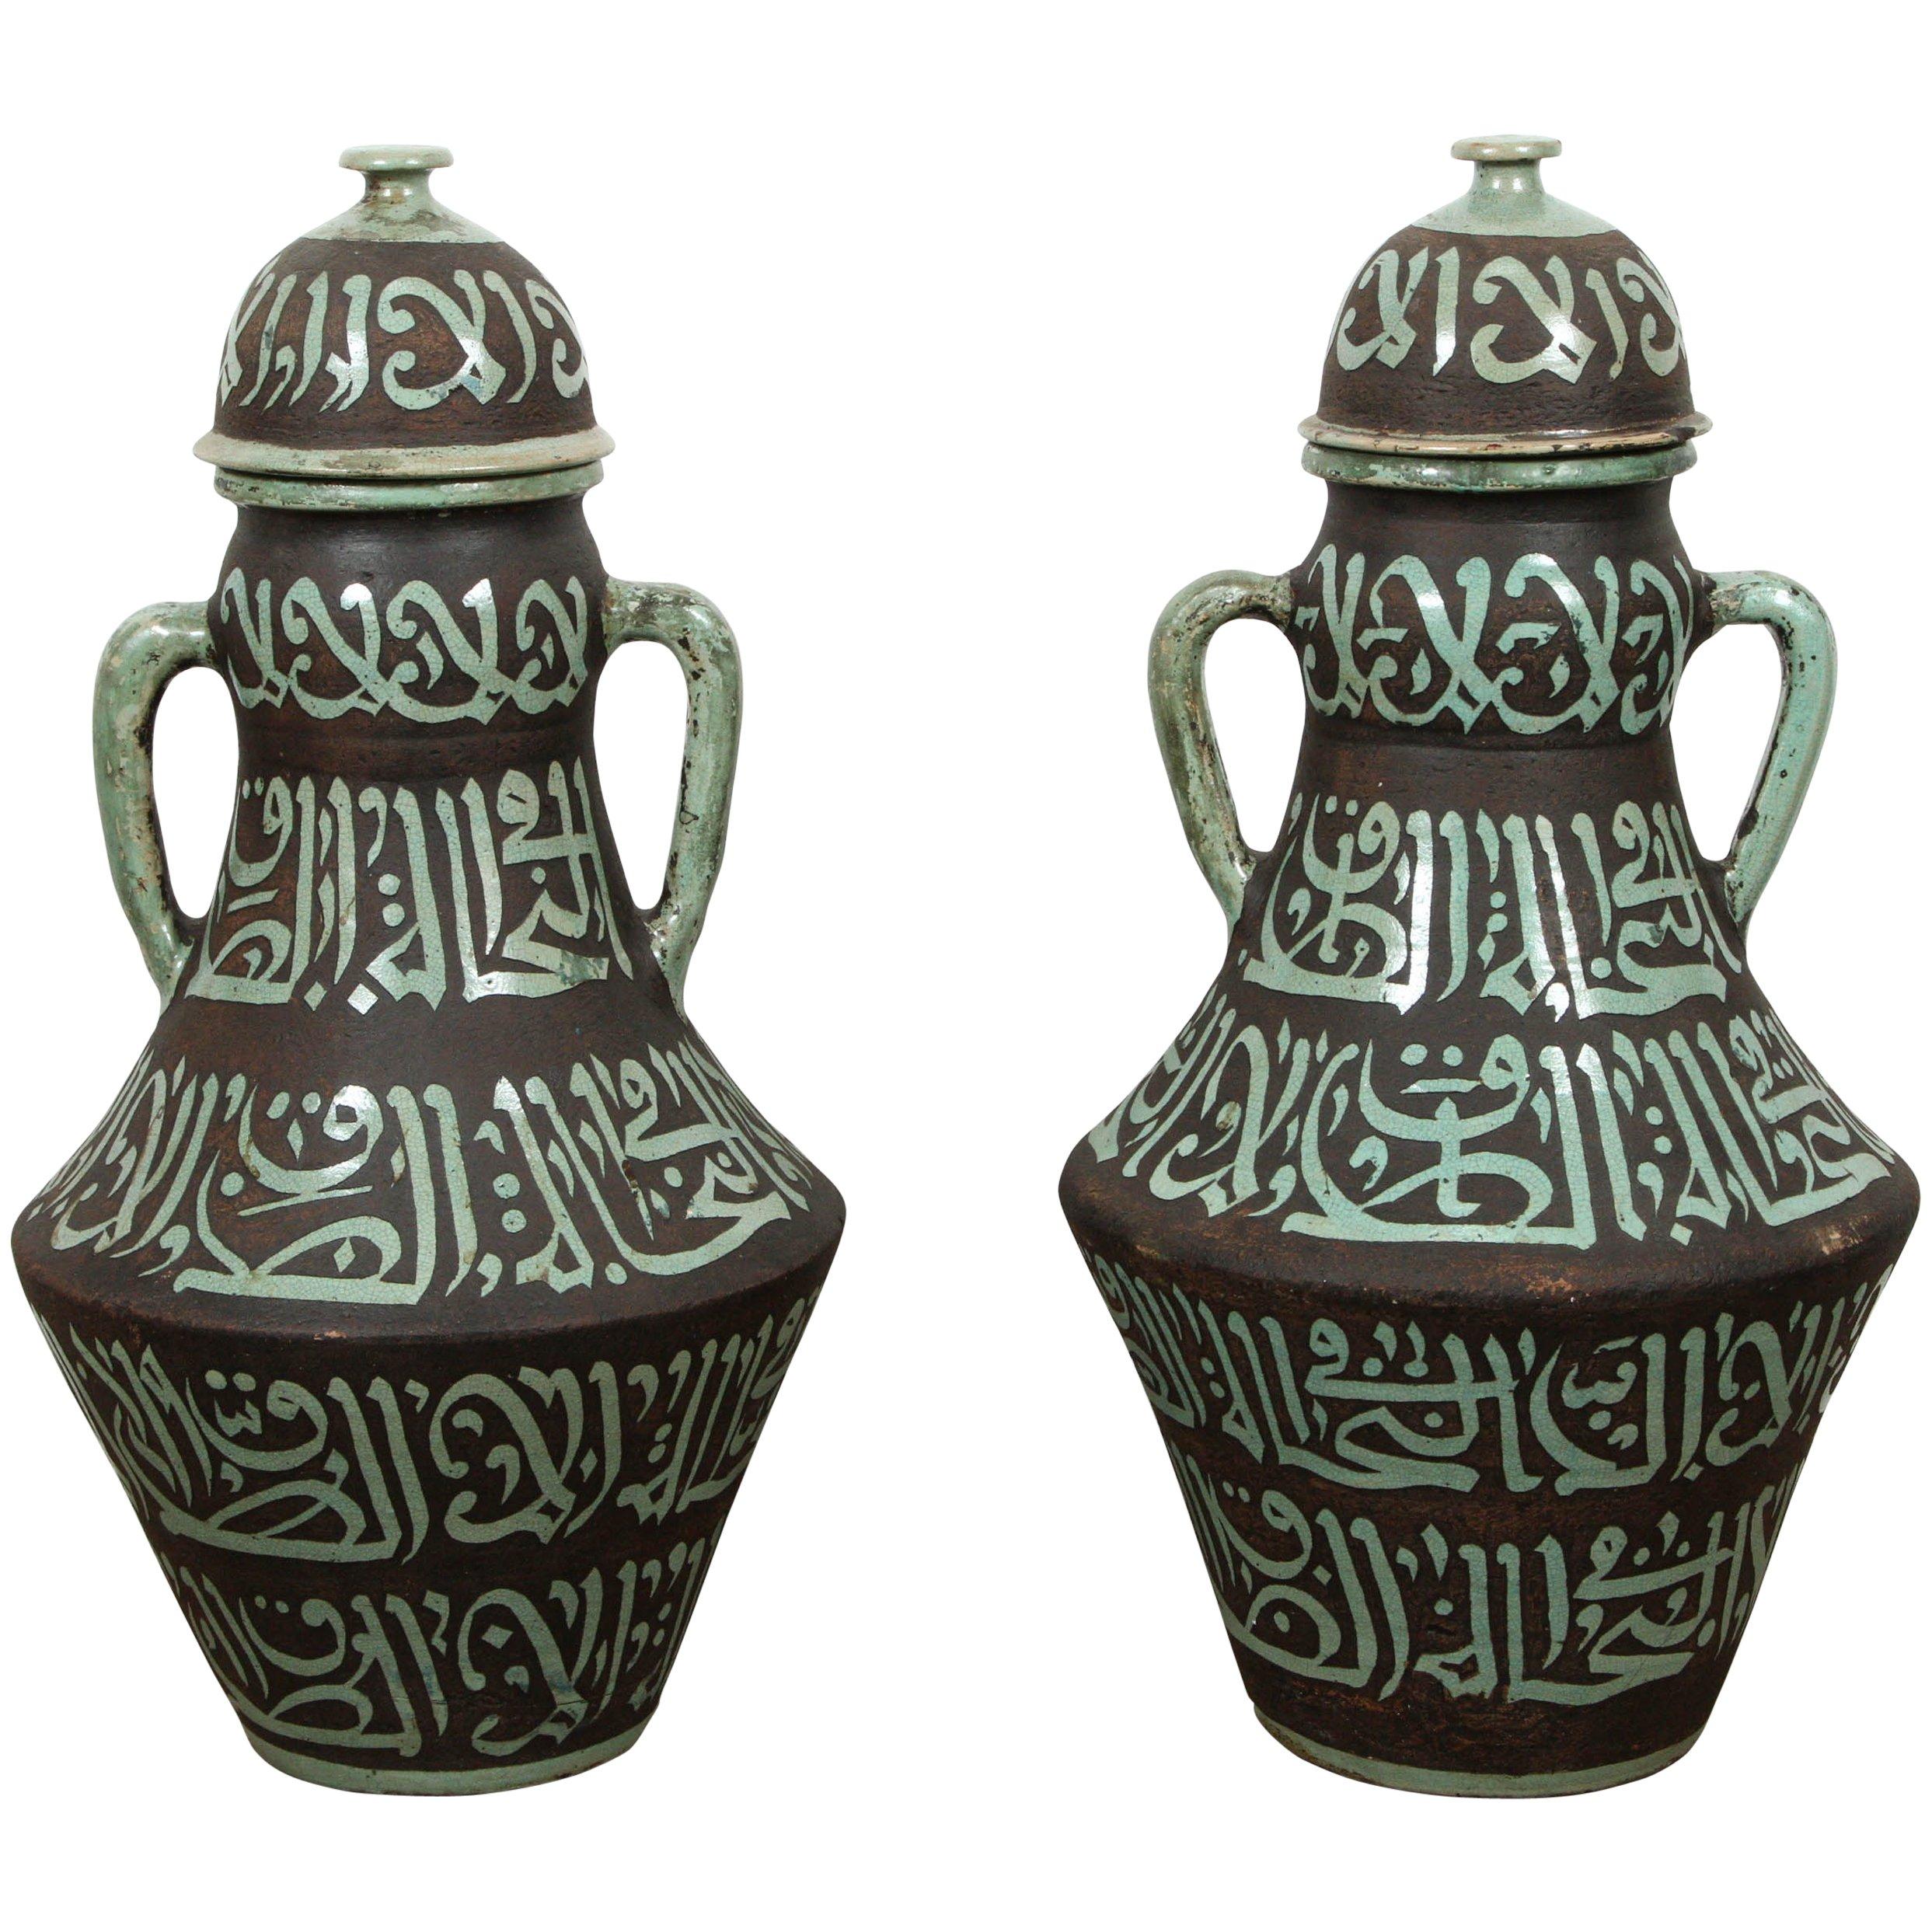 Paar marokkanische grüne und braune keramische Urnen mit Griffen aus geschliffener Keramik